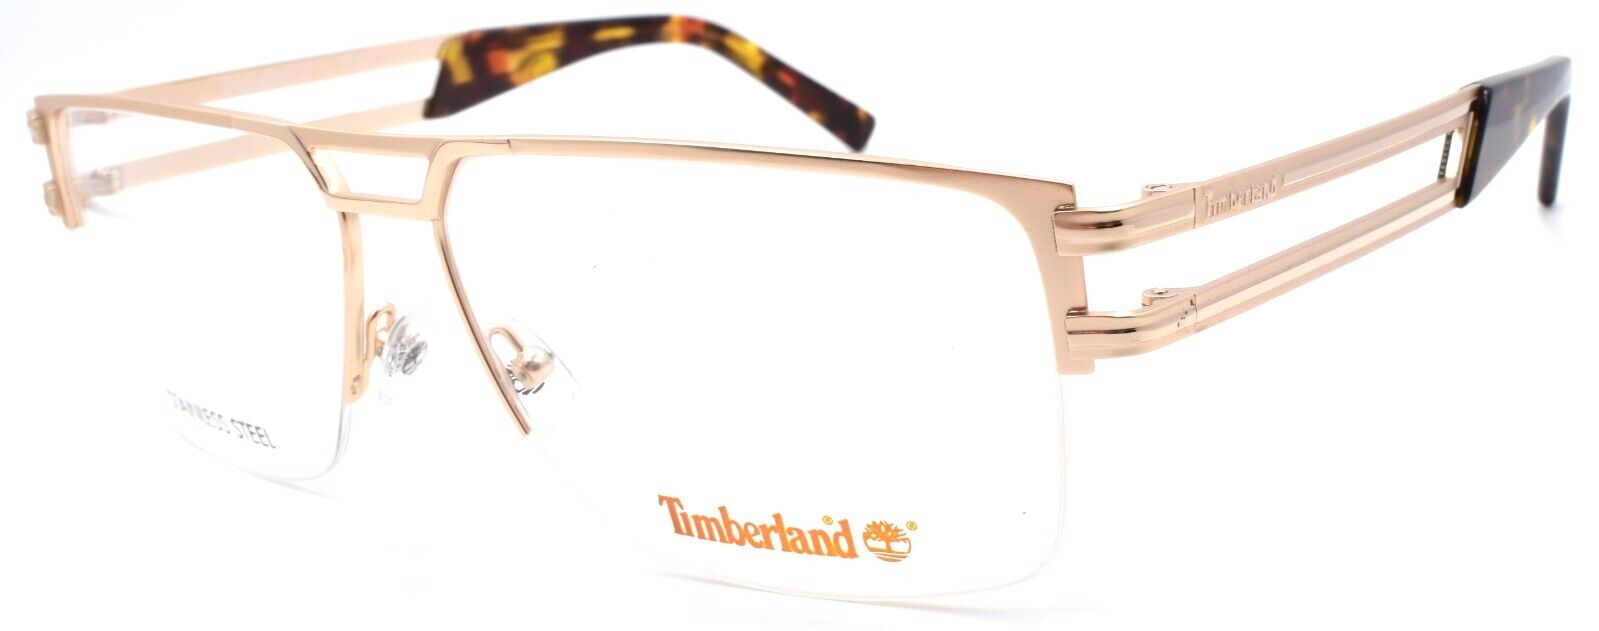 1-TIMBERLAND TB1700 032 Men's Eyeglasses Frames 60-14-150 Large Pale Gold-889214197559-IKSpecs